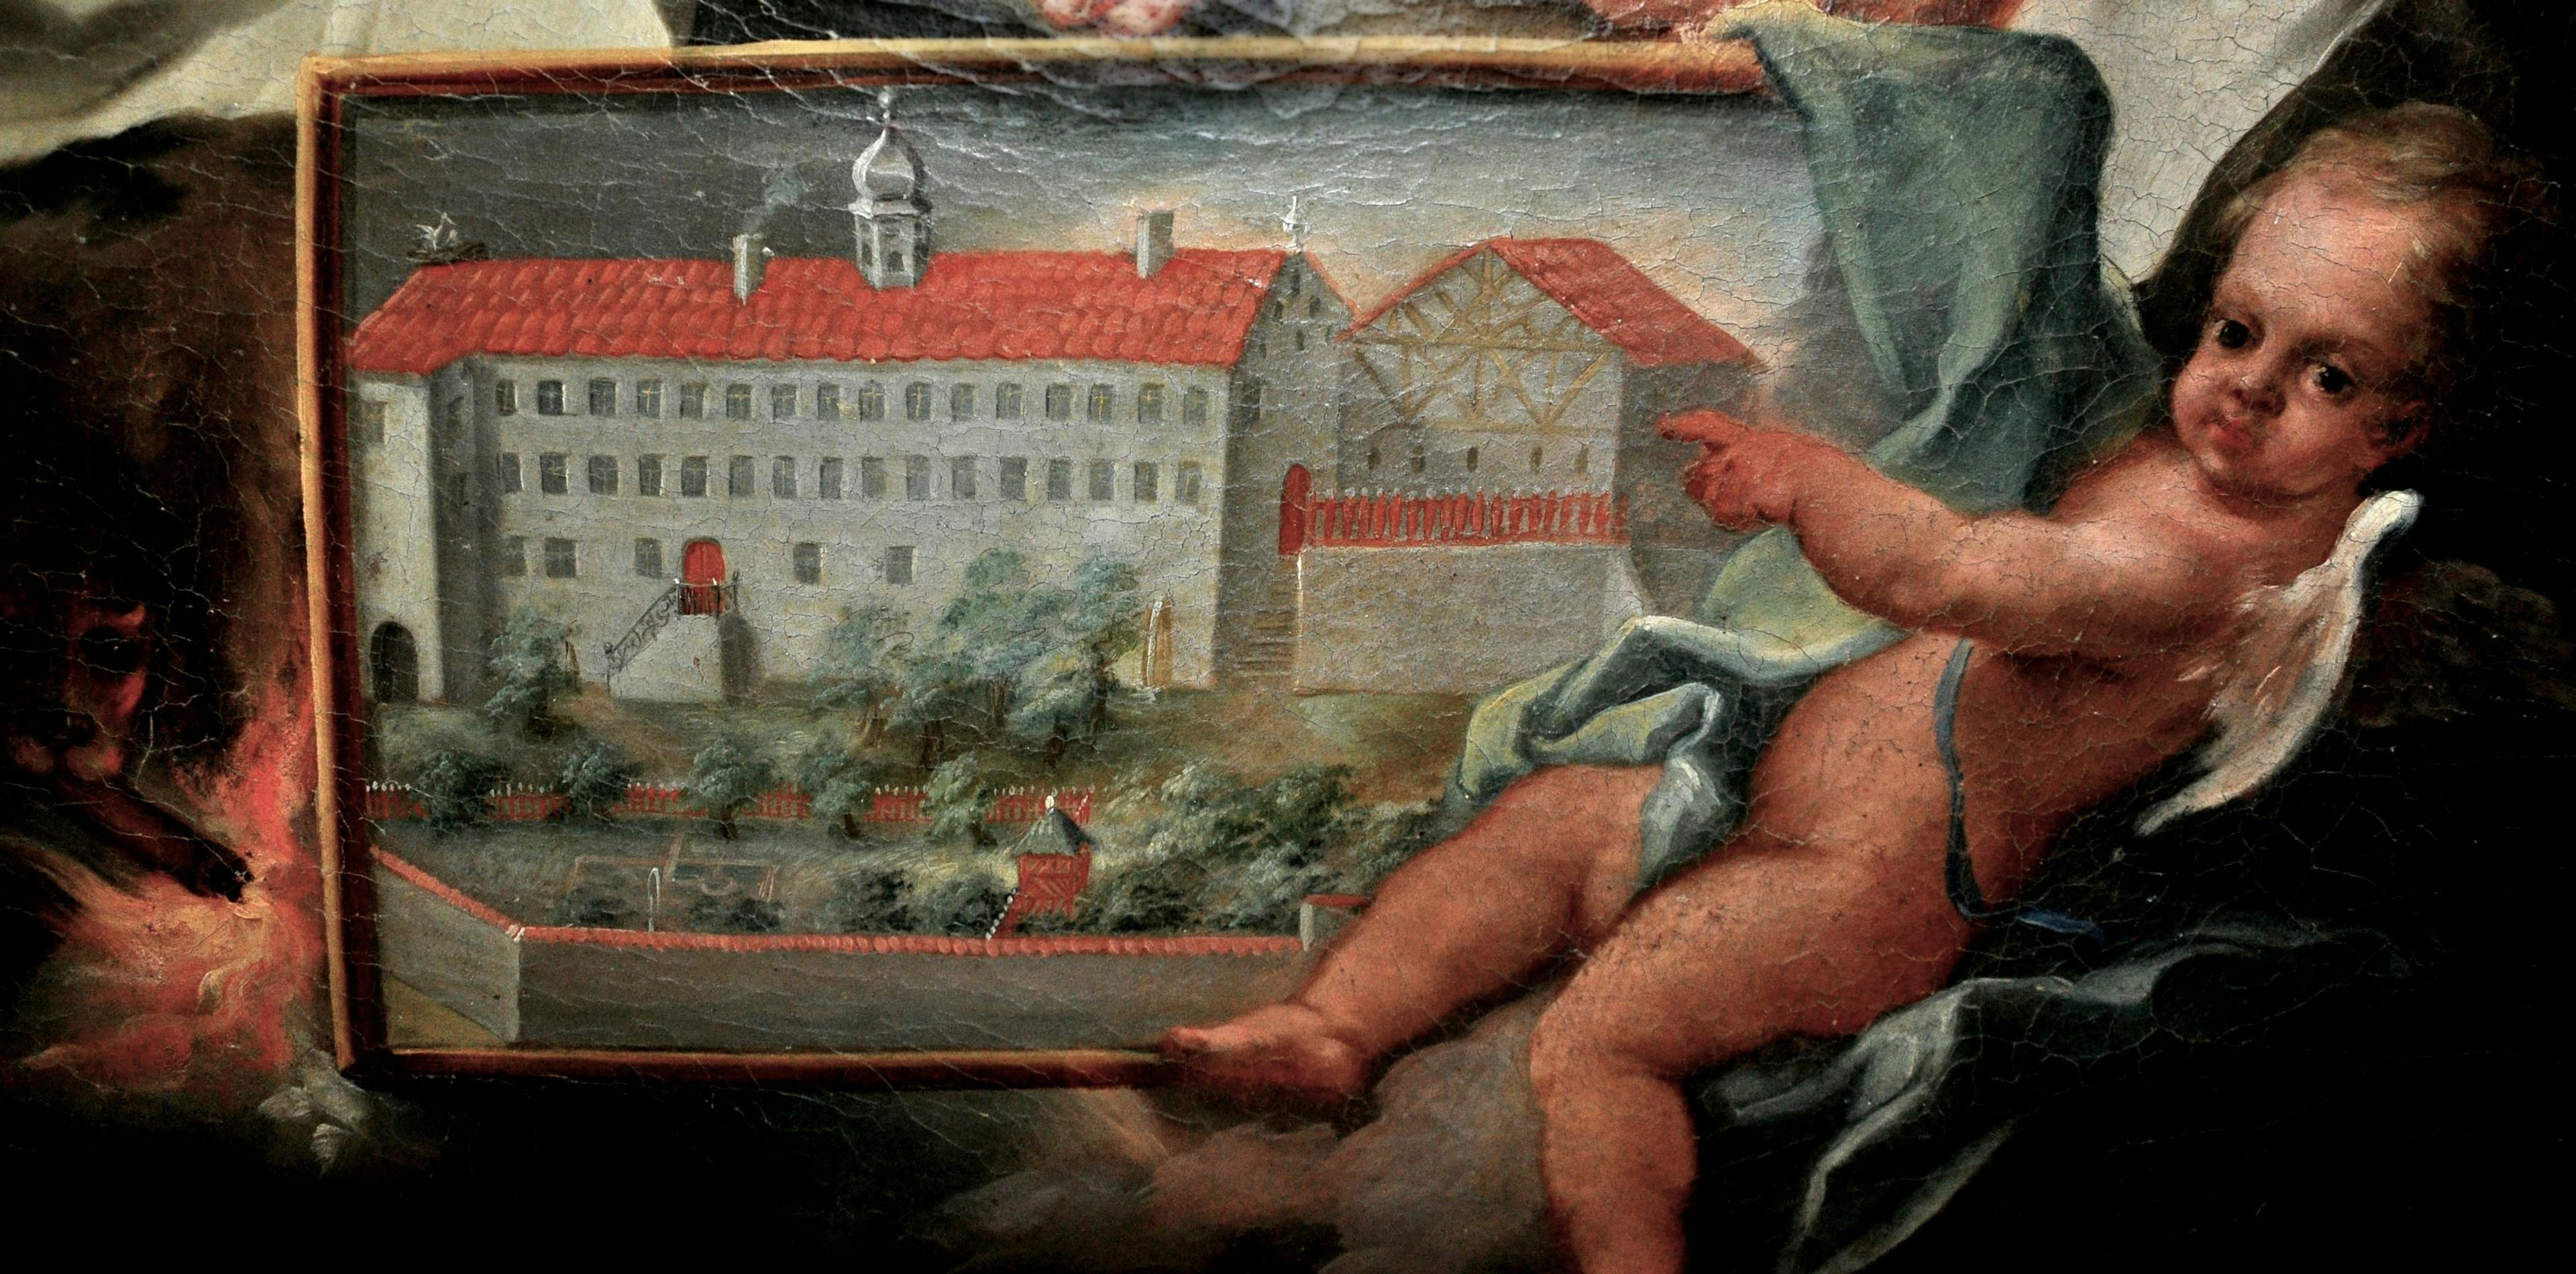 Kloster Binsdorf - Altes Bild mit Engel und Kloster